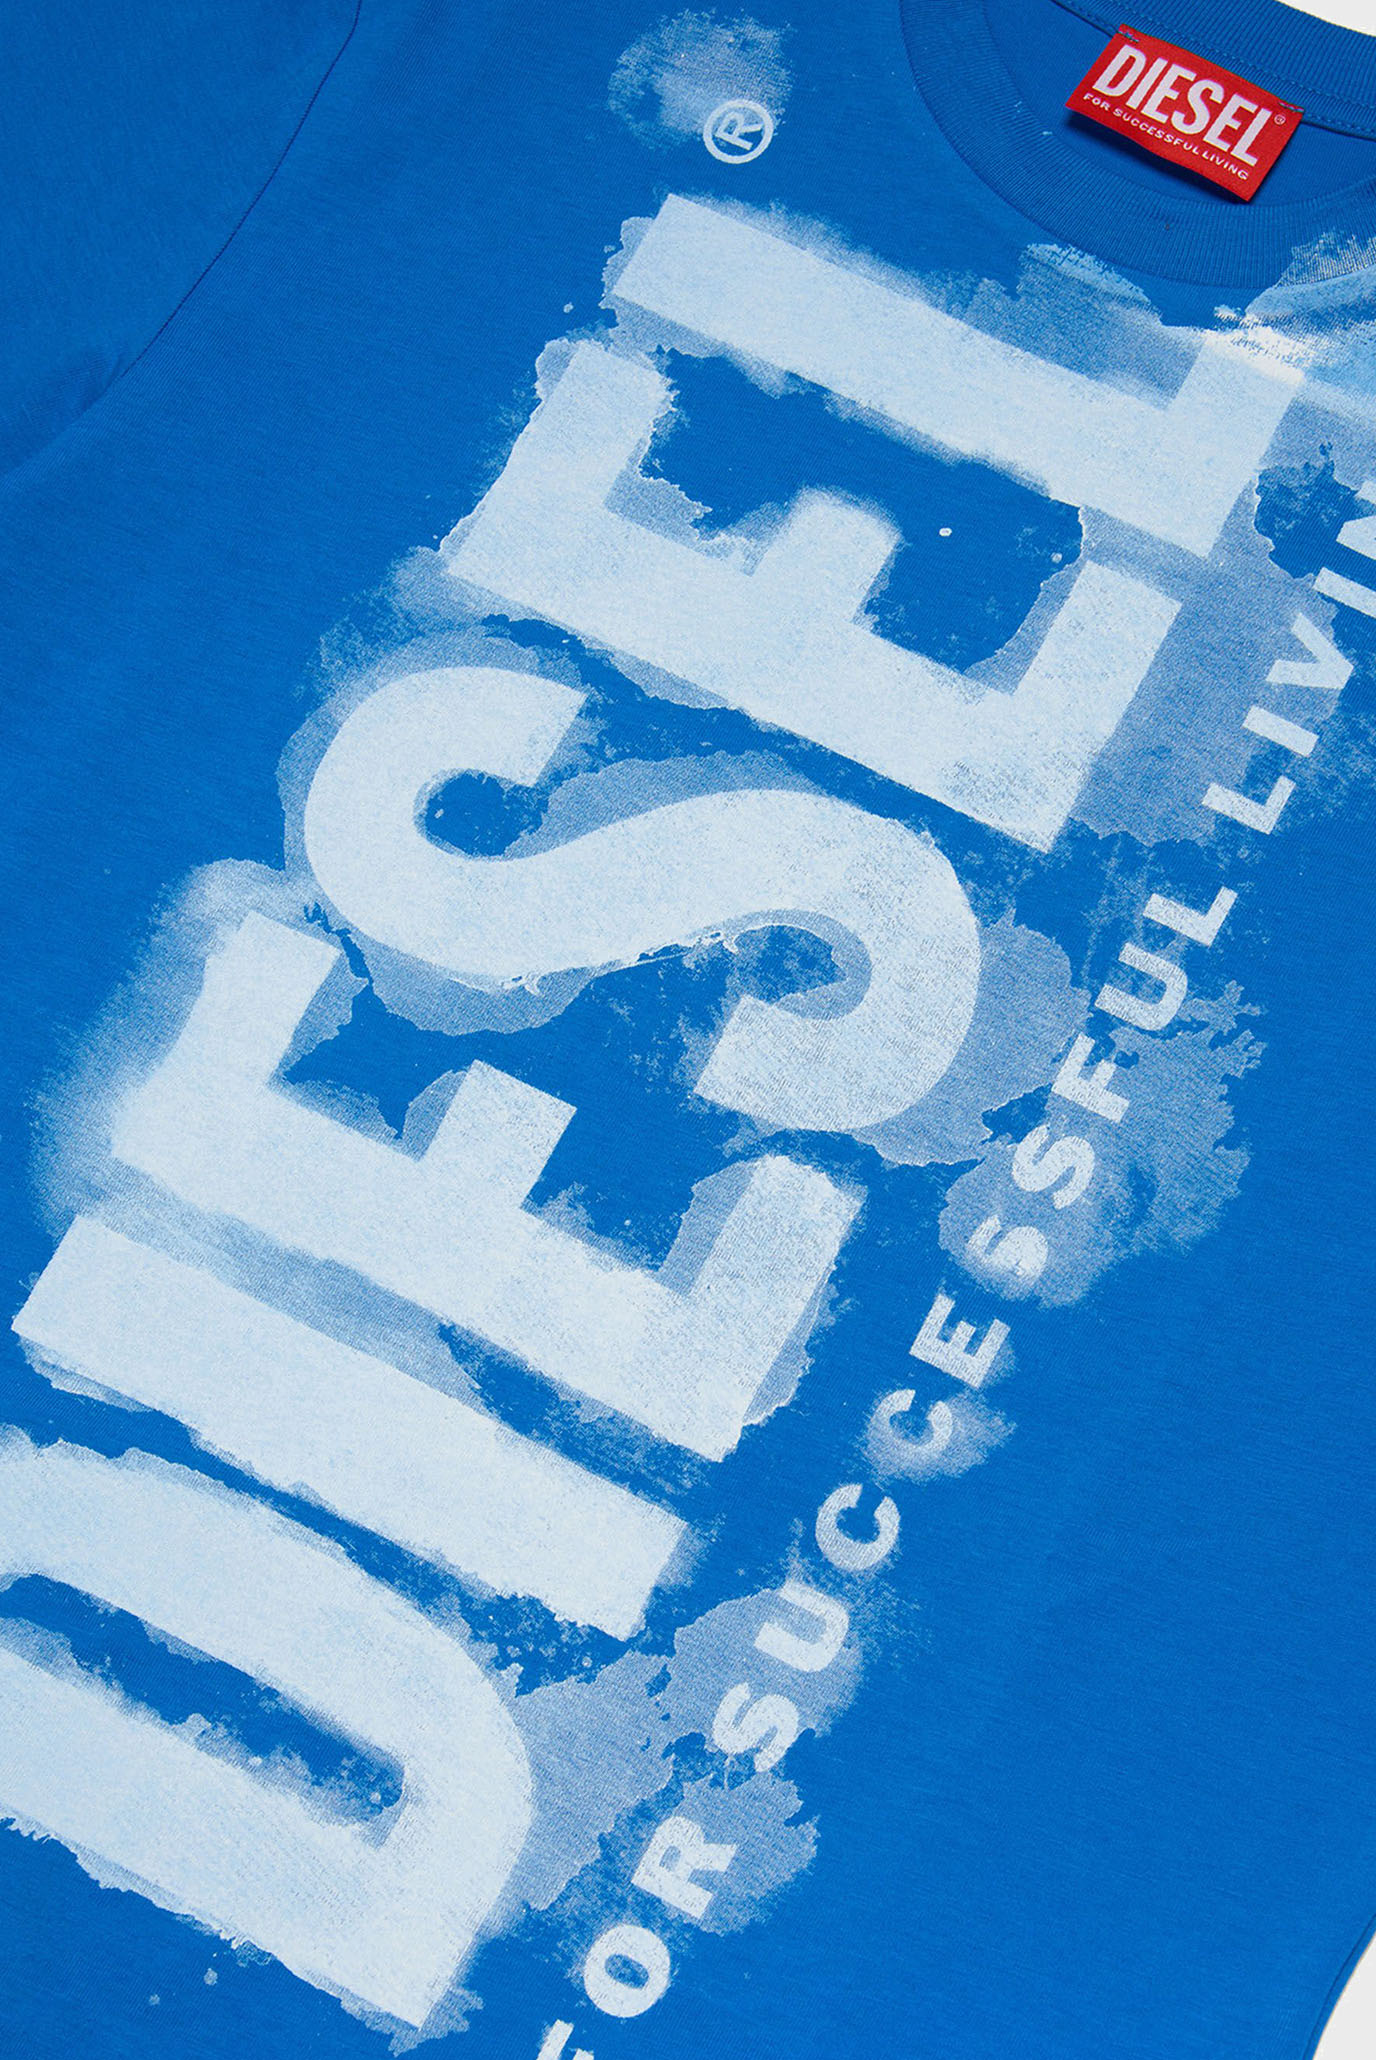 Детская синяя футболка TJUSTE16 OVE-SHIRT Diesel Кids J01131 KYAR1